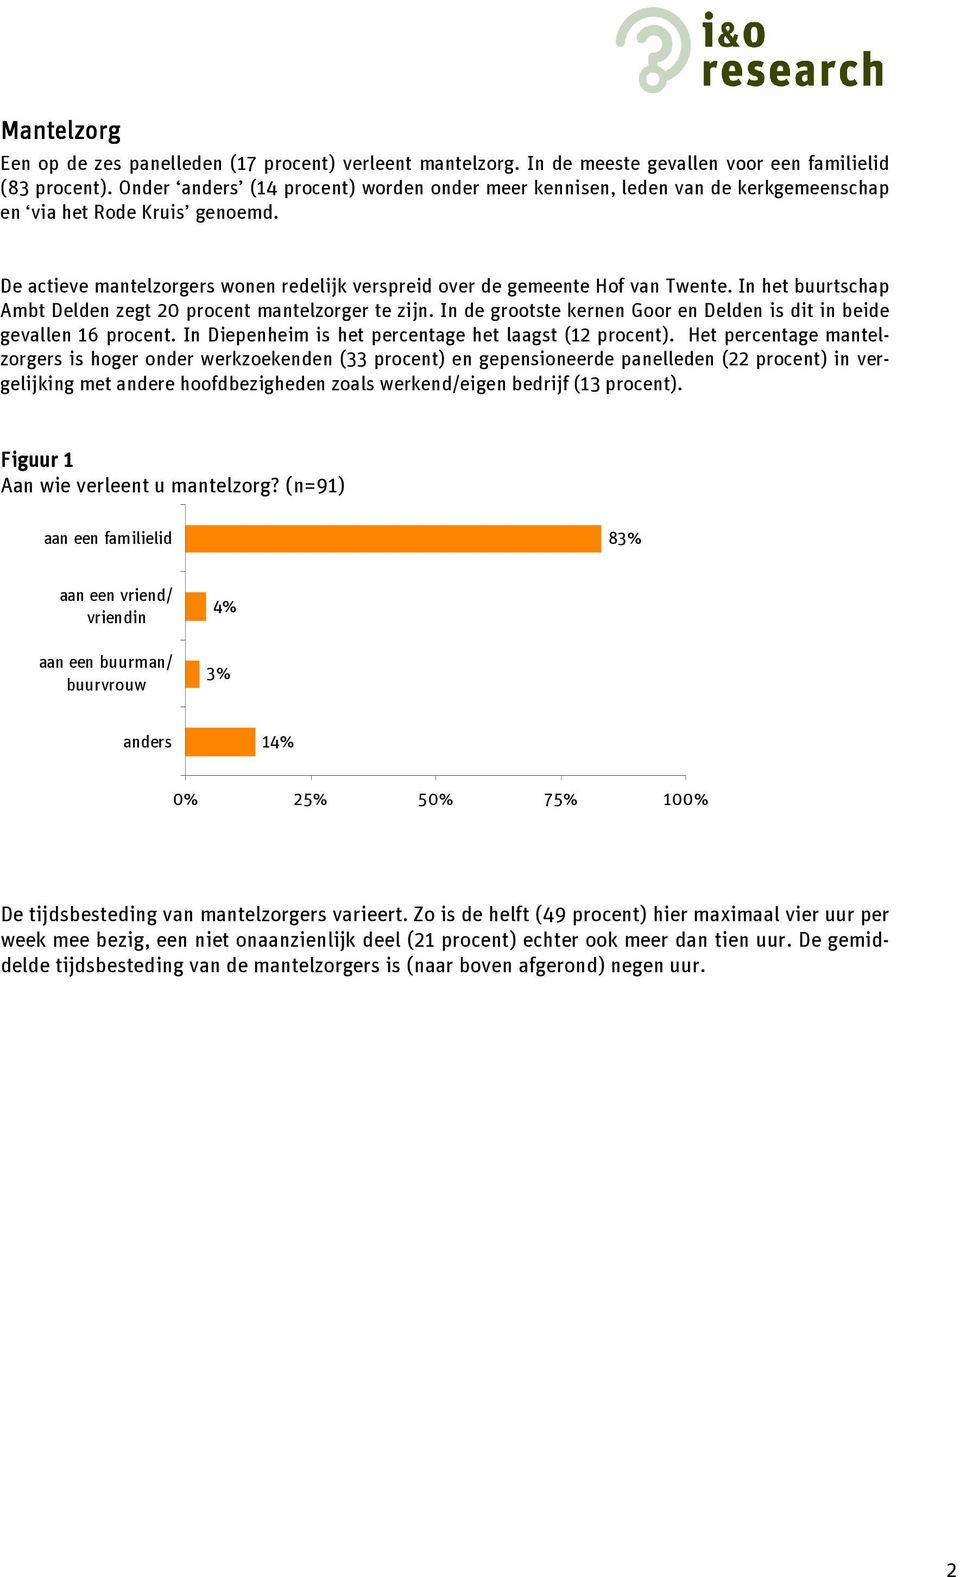 In het buurtschap Ambt Delden zegt 20 procent mantelzorger te zijn. In de grootste kernen Goor en Delden is dit in beide gevallen 16 procent. In Diepenheim is het percentage het laagst (12 procent).